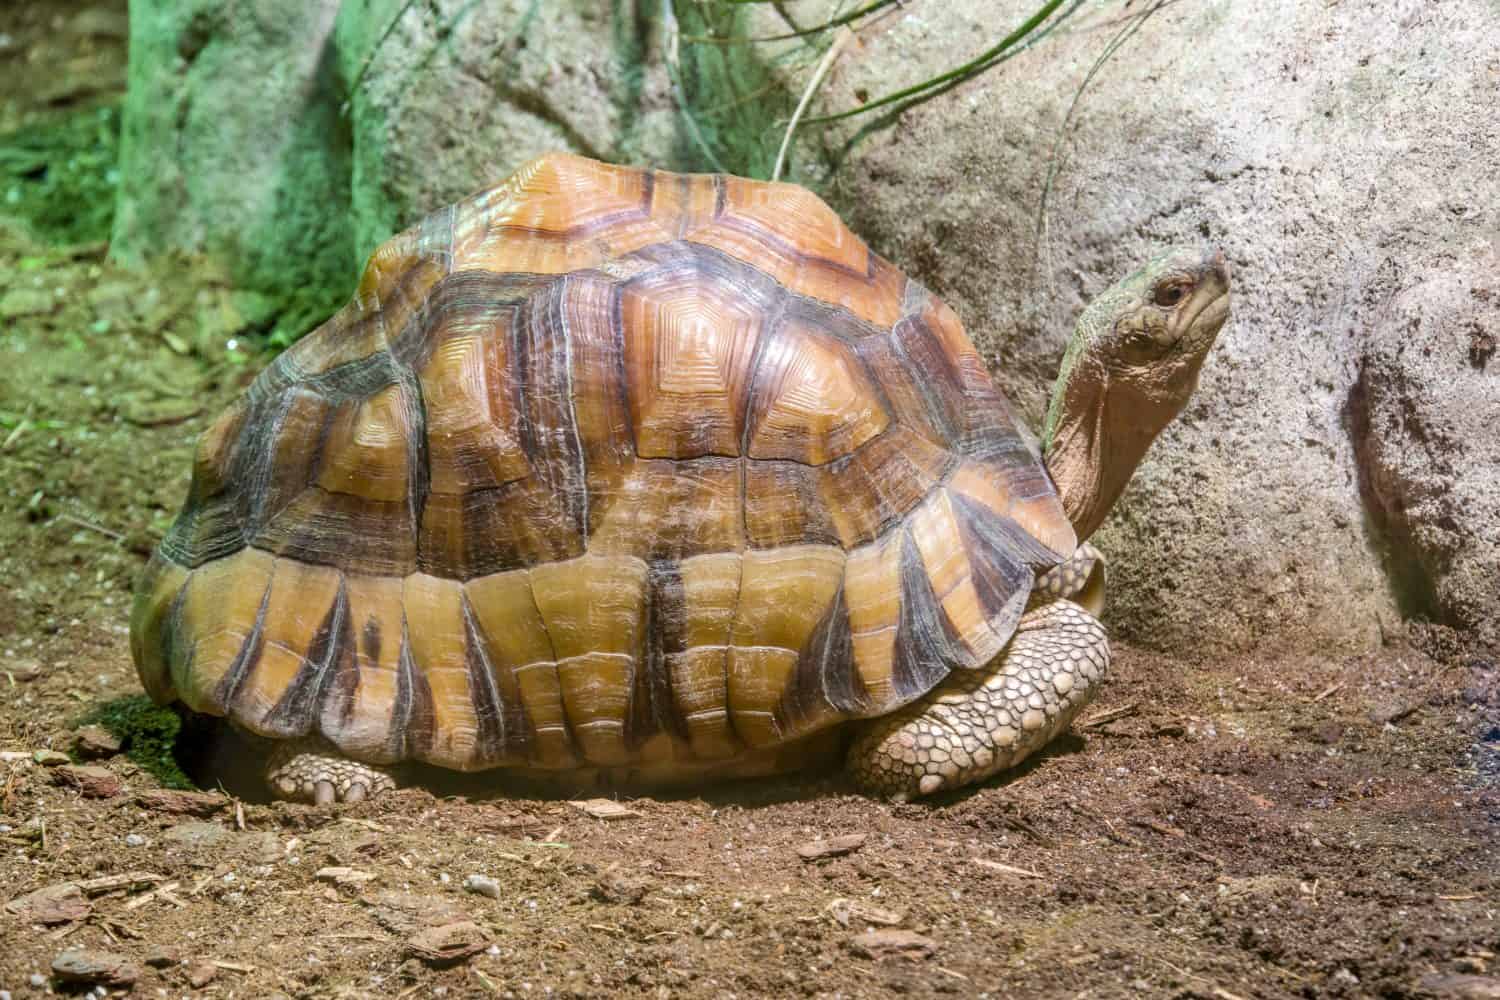 La tartaruga angonoka (Astrochelys yniphora) è una specie di tartaruga in grave pericolo di estinzione, gravemente minacciata dal bracconaggio per il commercio illegale di animali domestici.  È endemico del Madagascar.